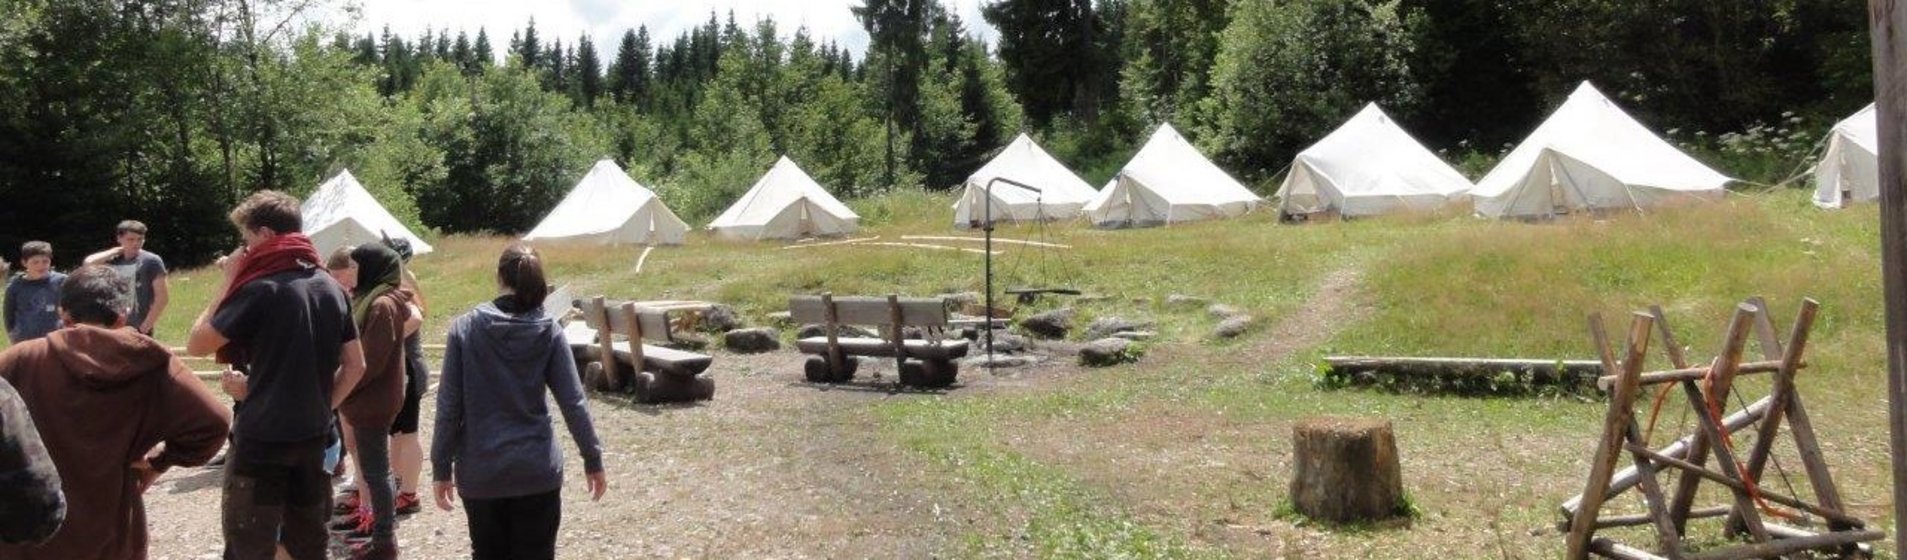 Bild Zeltplatz mit weißen Rundzelten und Feuerstelle